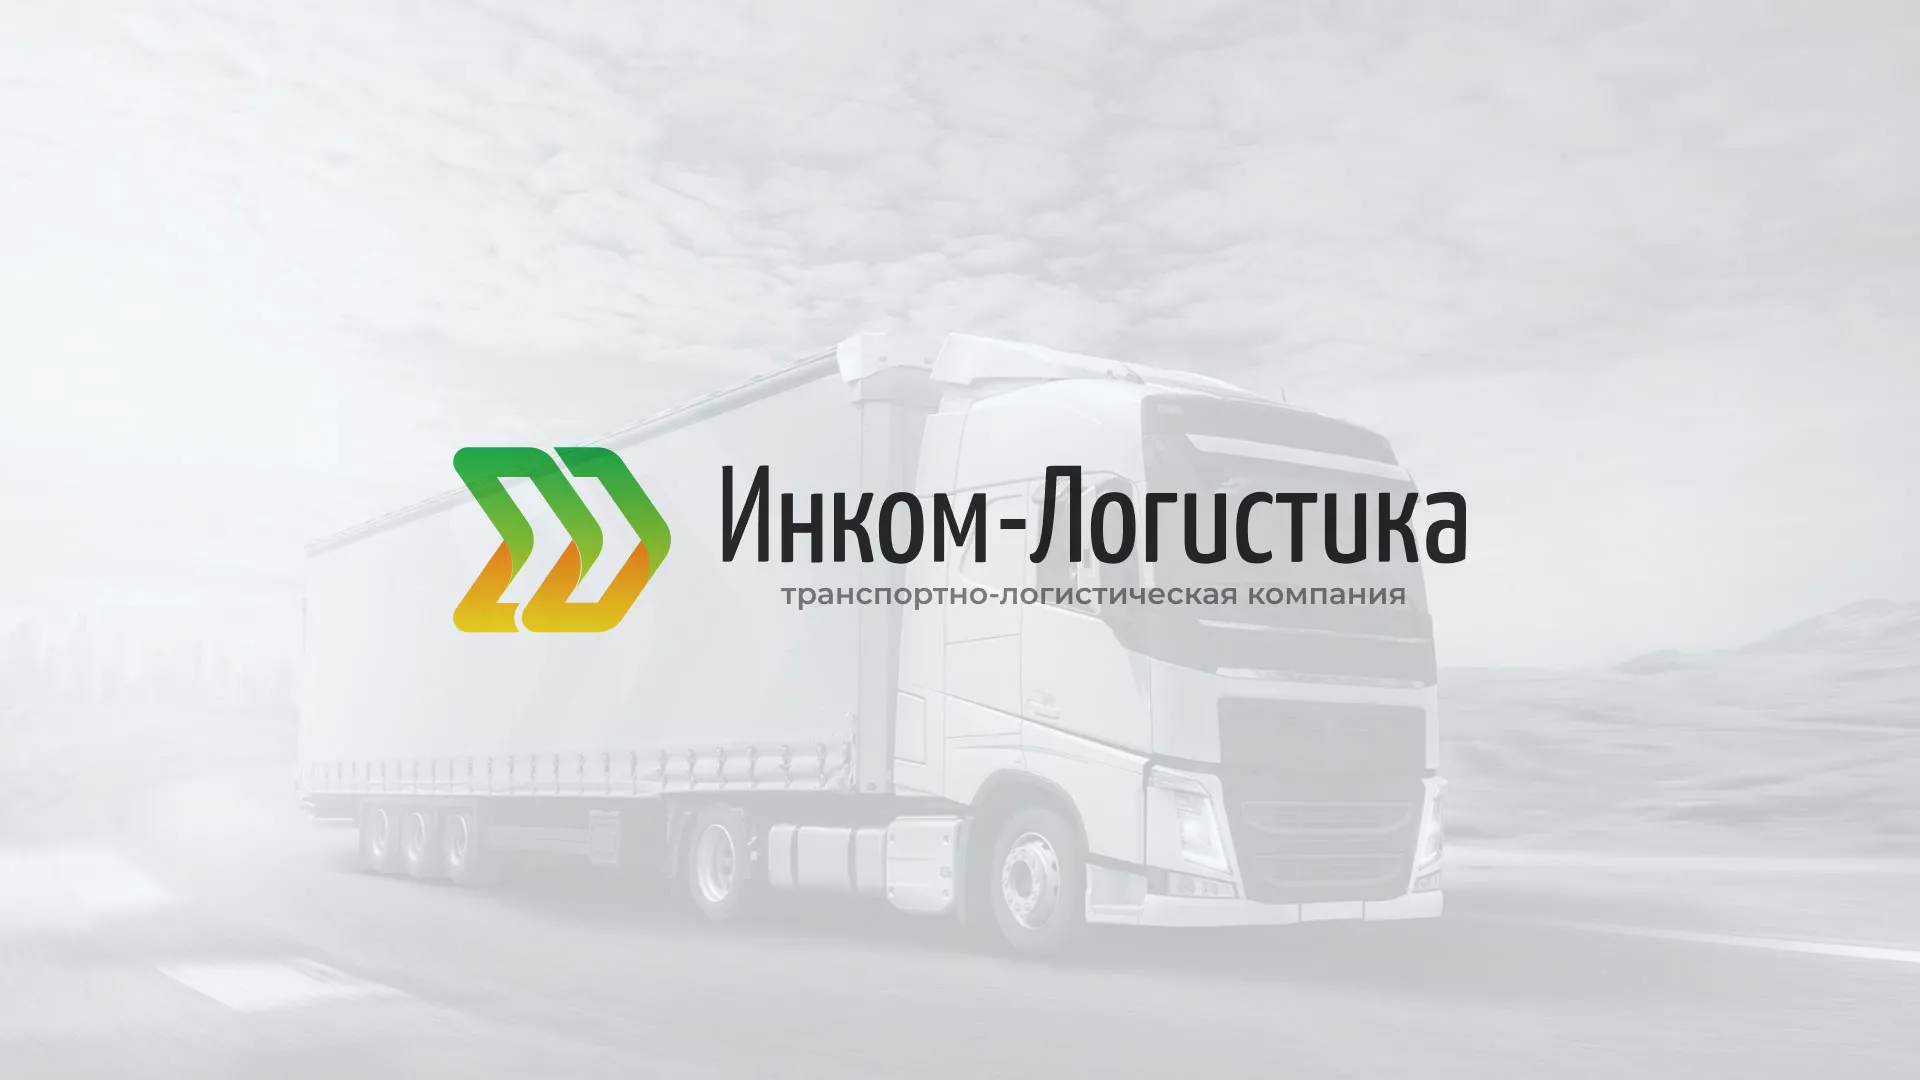 Разработка логотипа и сайта компании «Инком-Логистика» в Владикавказе